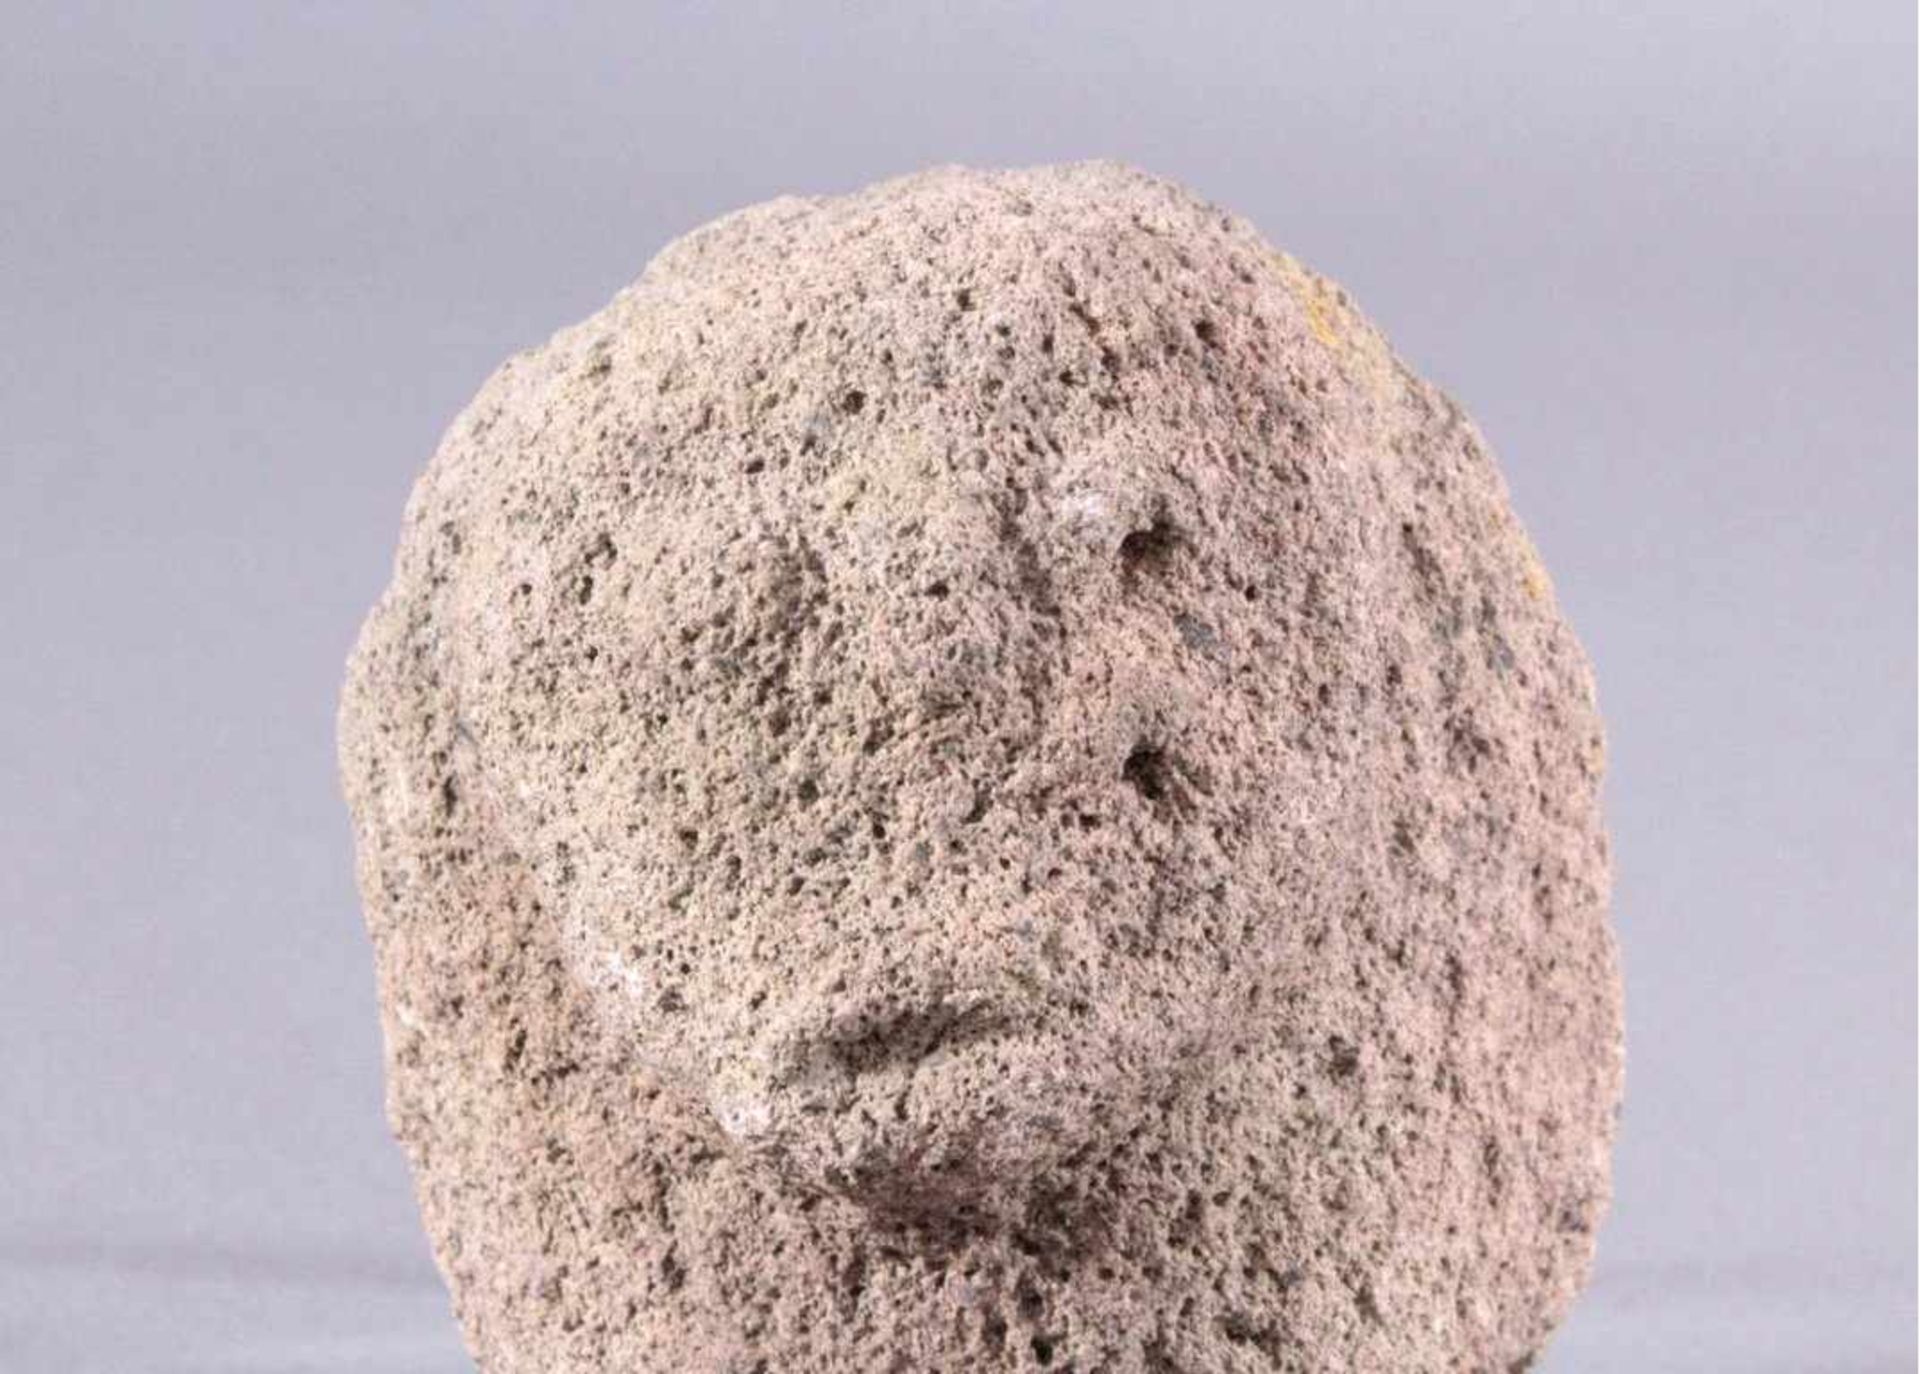 Skulptur - Lausitzer Kultur 900-500 v. Chr.Skulptur in Ahnenkopfform, aus rauem Stein gehauen,ca. - Bild 2 aus 3